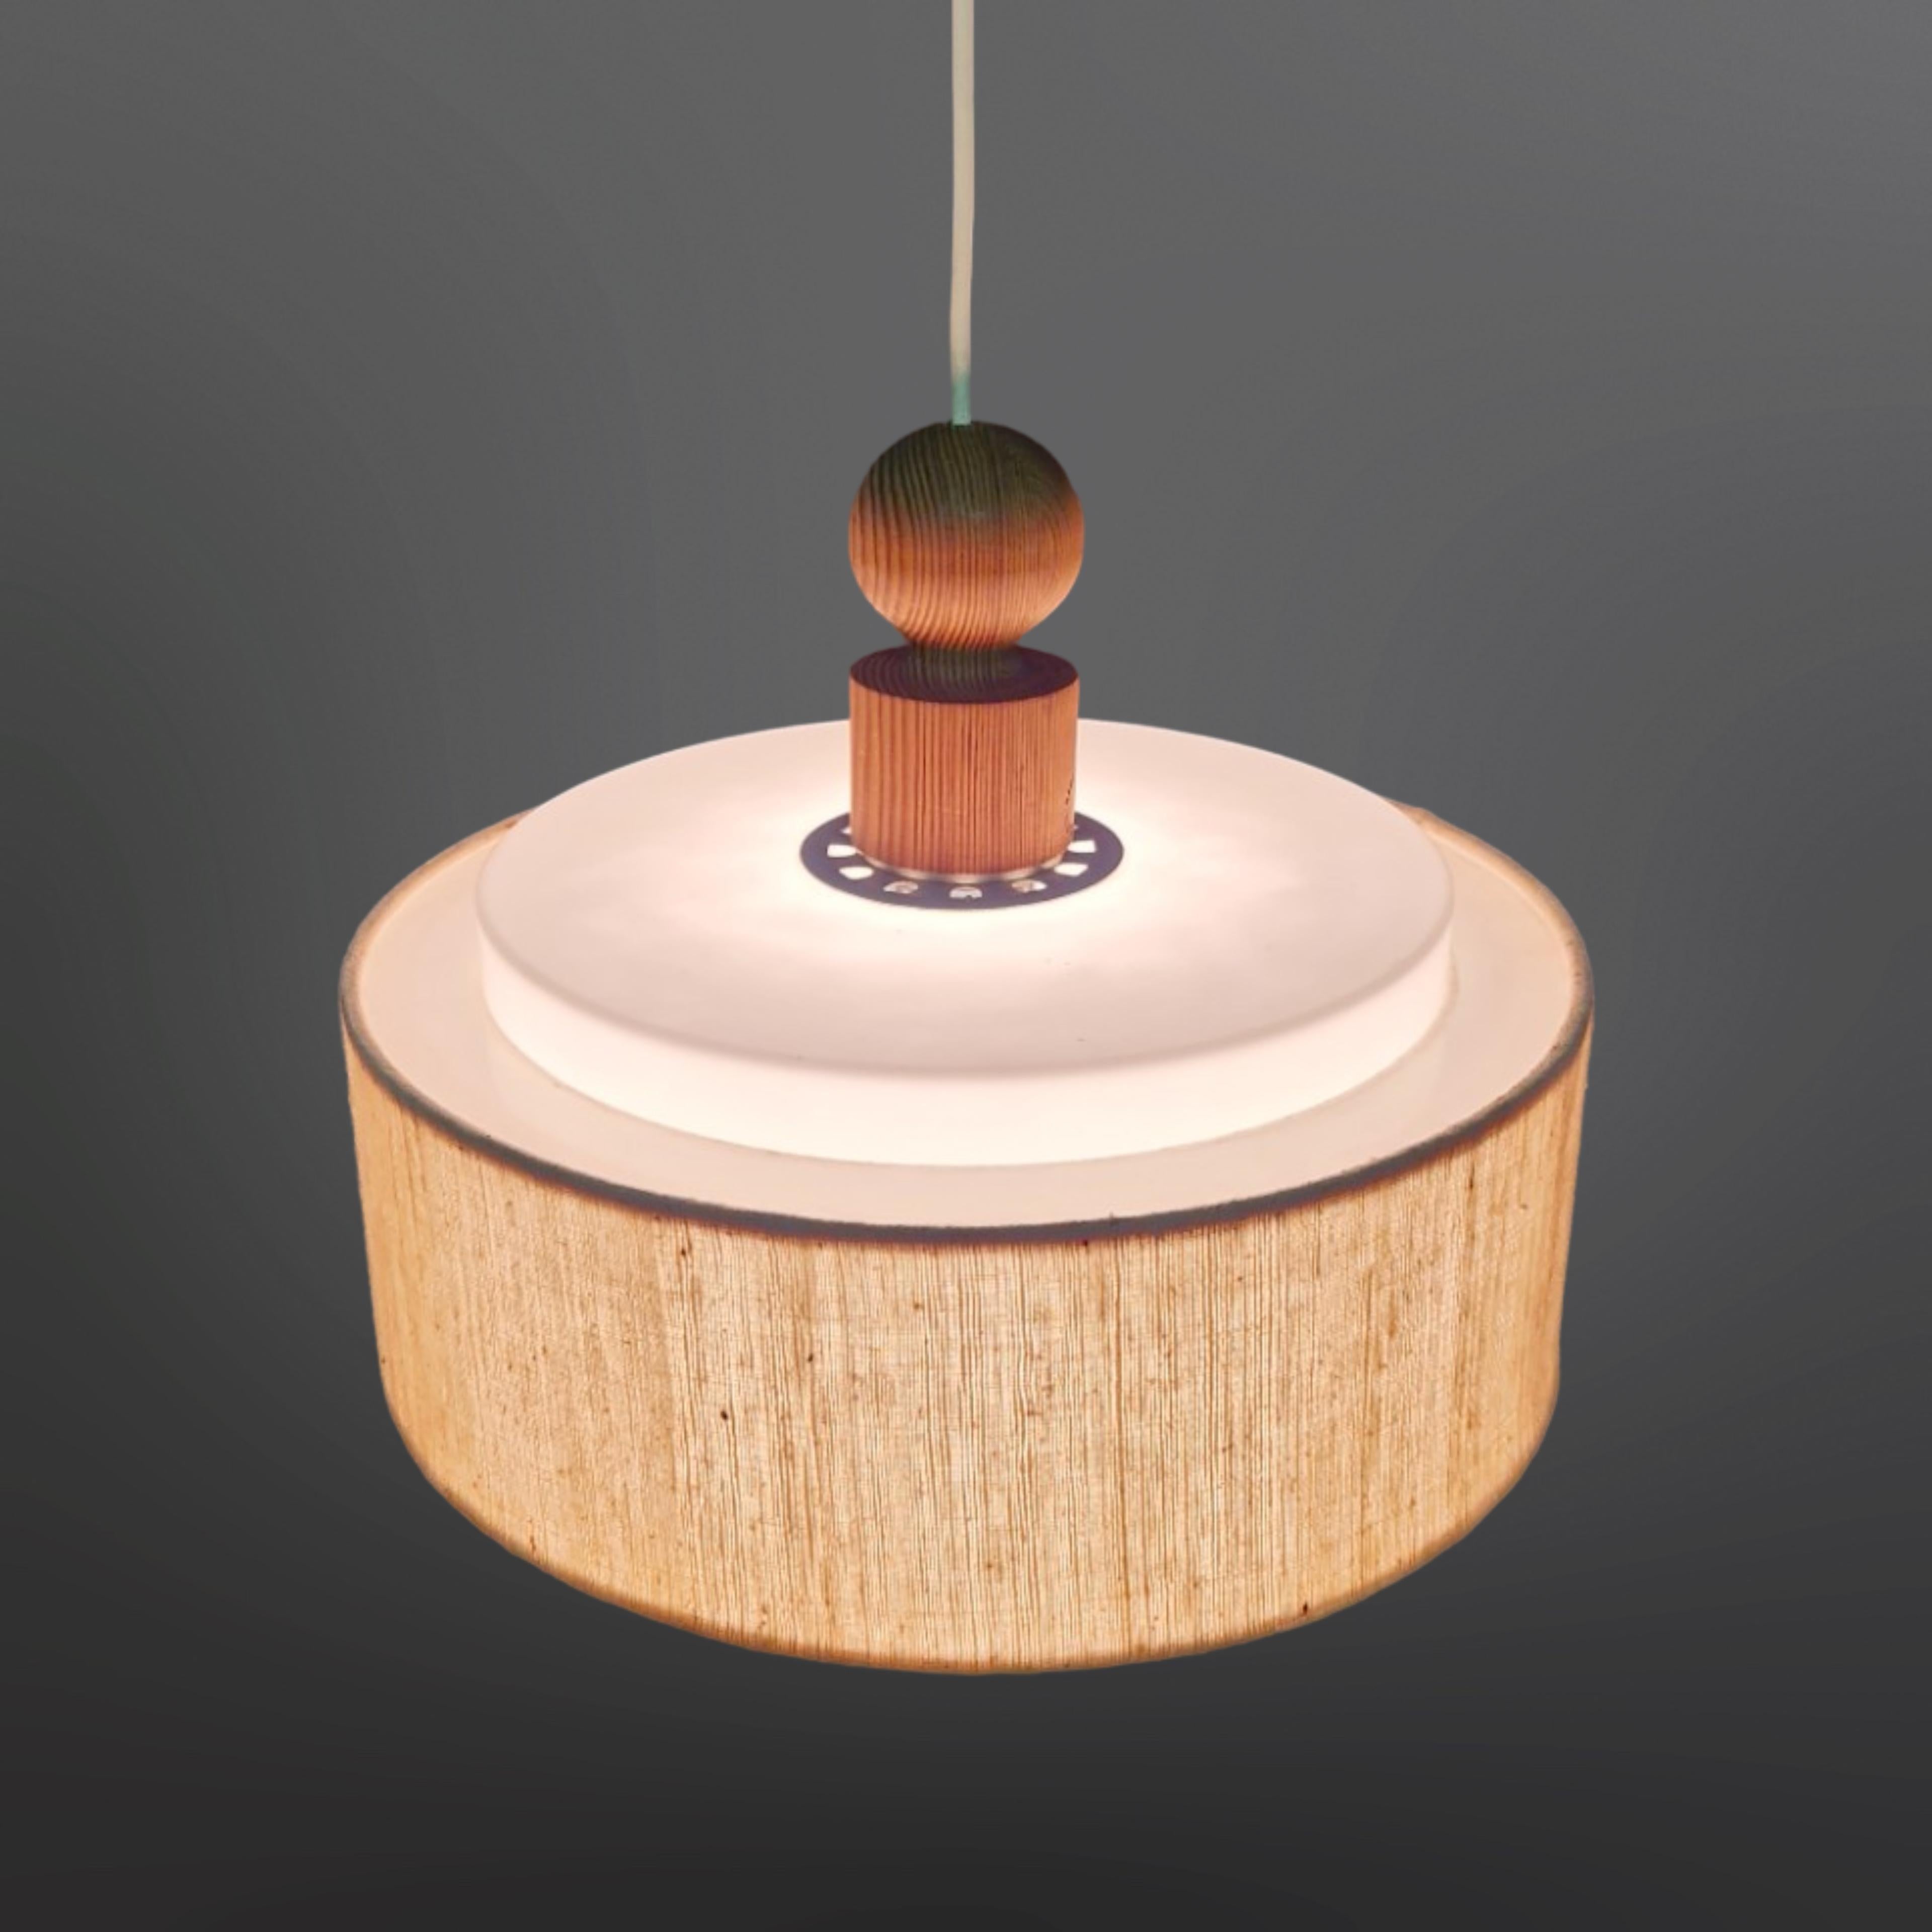 Lampe suspendue The Modern Scandinavian modern. Conçu par Uno et Östen Kristiansson pour Luxus Sweden dans les années 1960. Il est constitué d'une galerie en pin avec des diffuseurs supérieurs et inférieurs en plexiglas et d'un bord en tissu. 

La